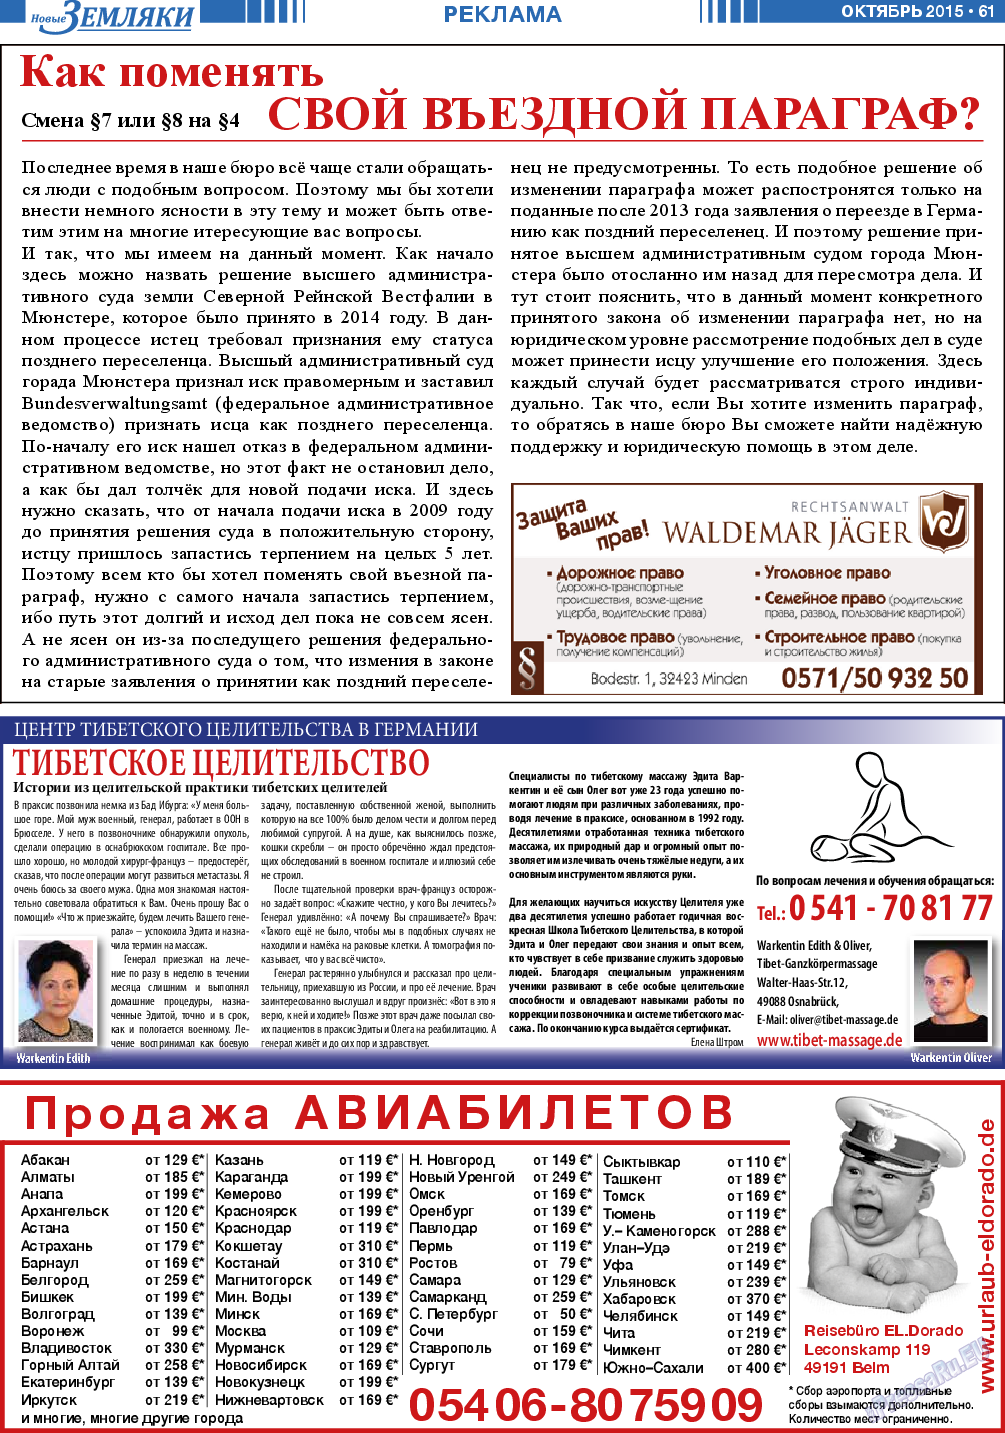 Новые Земляки, газета. 2015 №10 стр.61